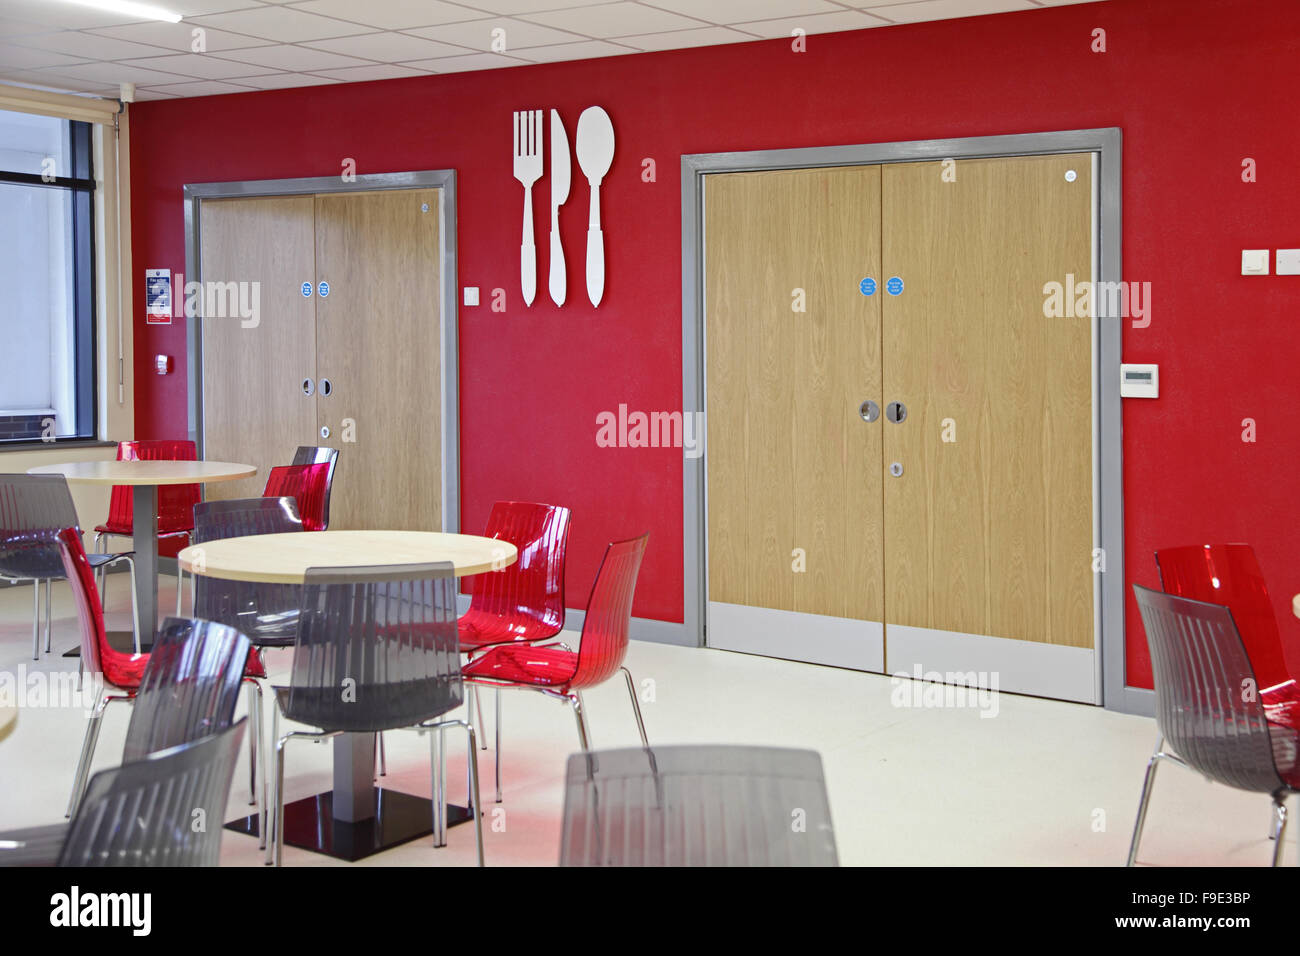 Restaurant-Bereich in einer neuen Akademie-Schule, die mit einem roten und grauen Farbschema mit großen Messer und Gabel Symbole an der Wand montiert Stockfoto